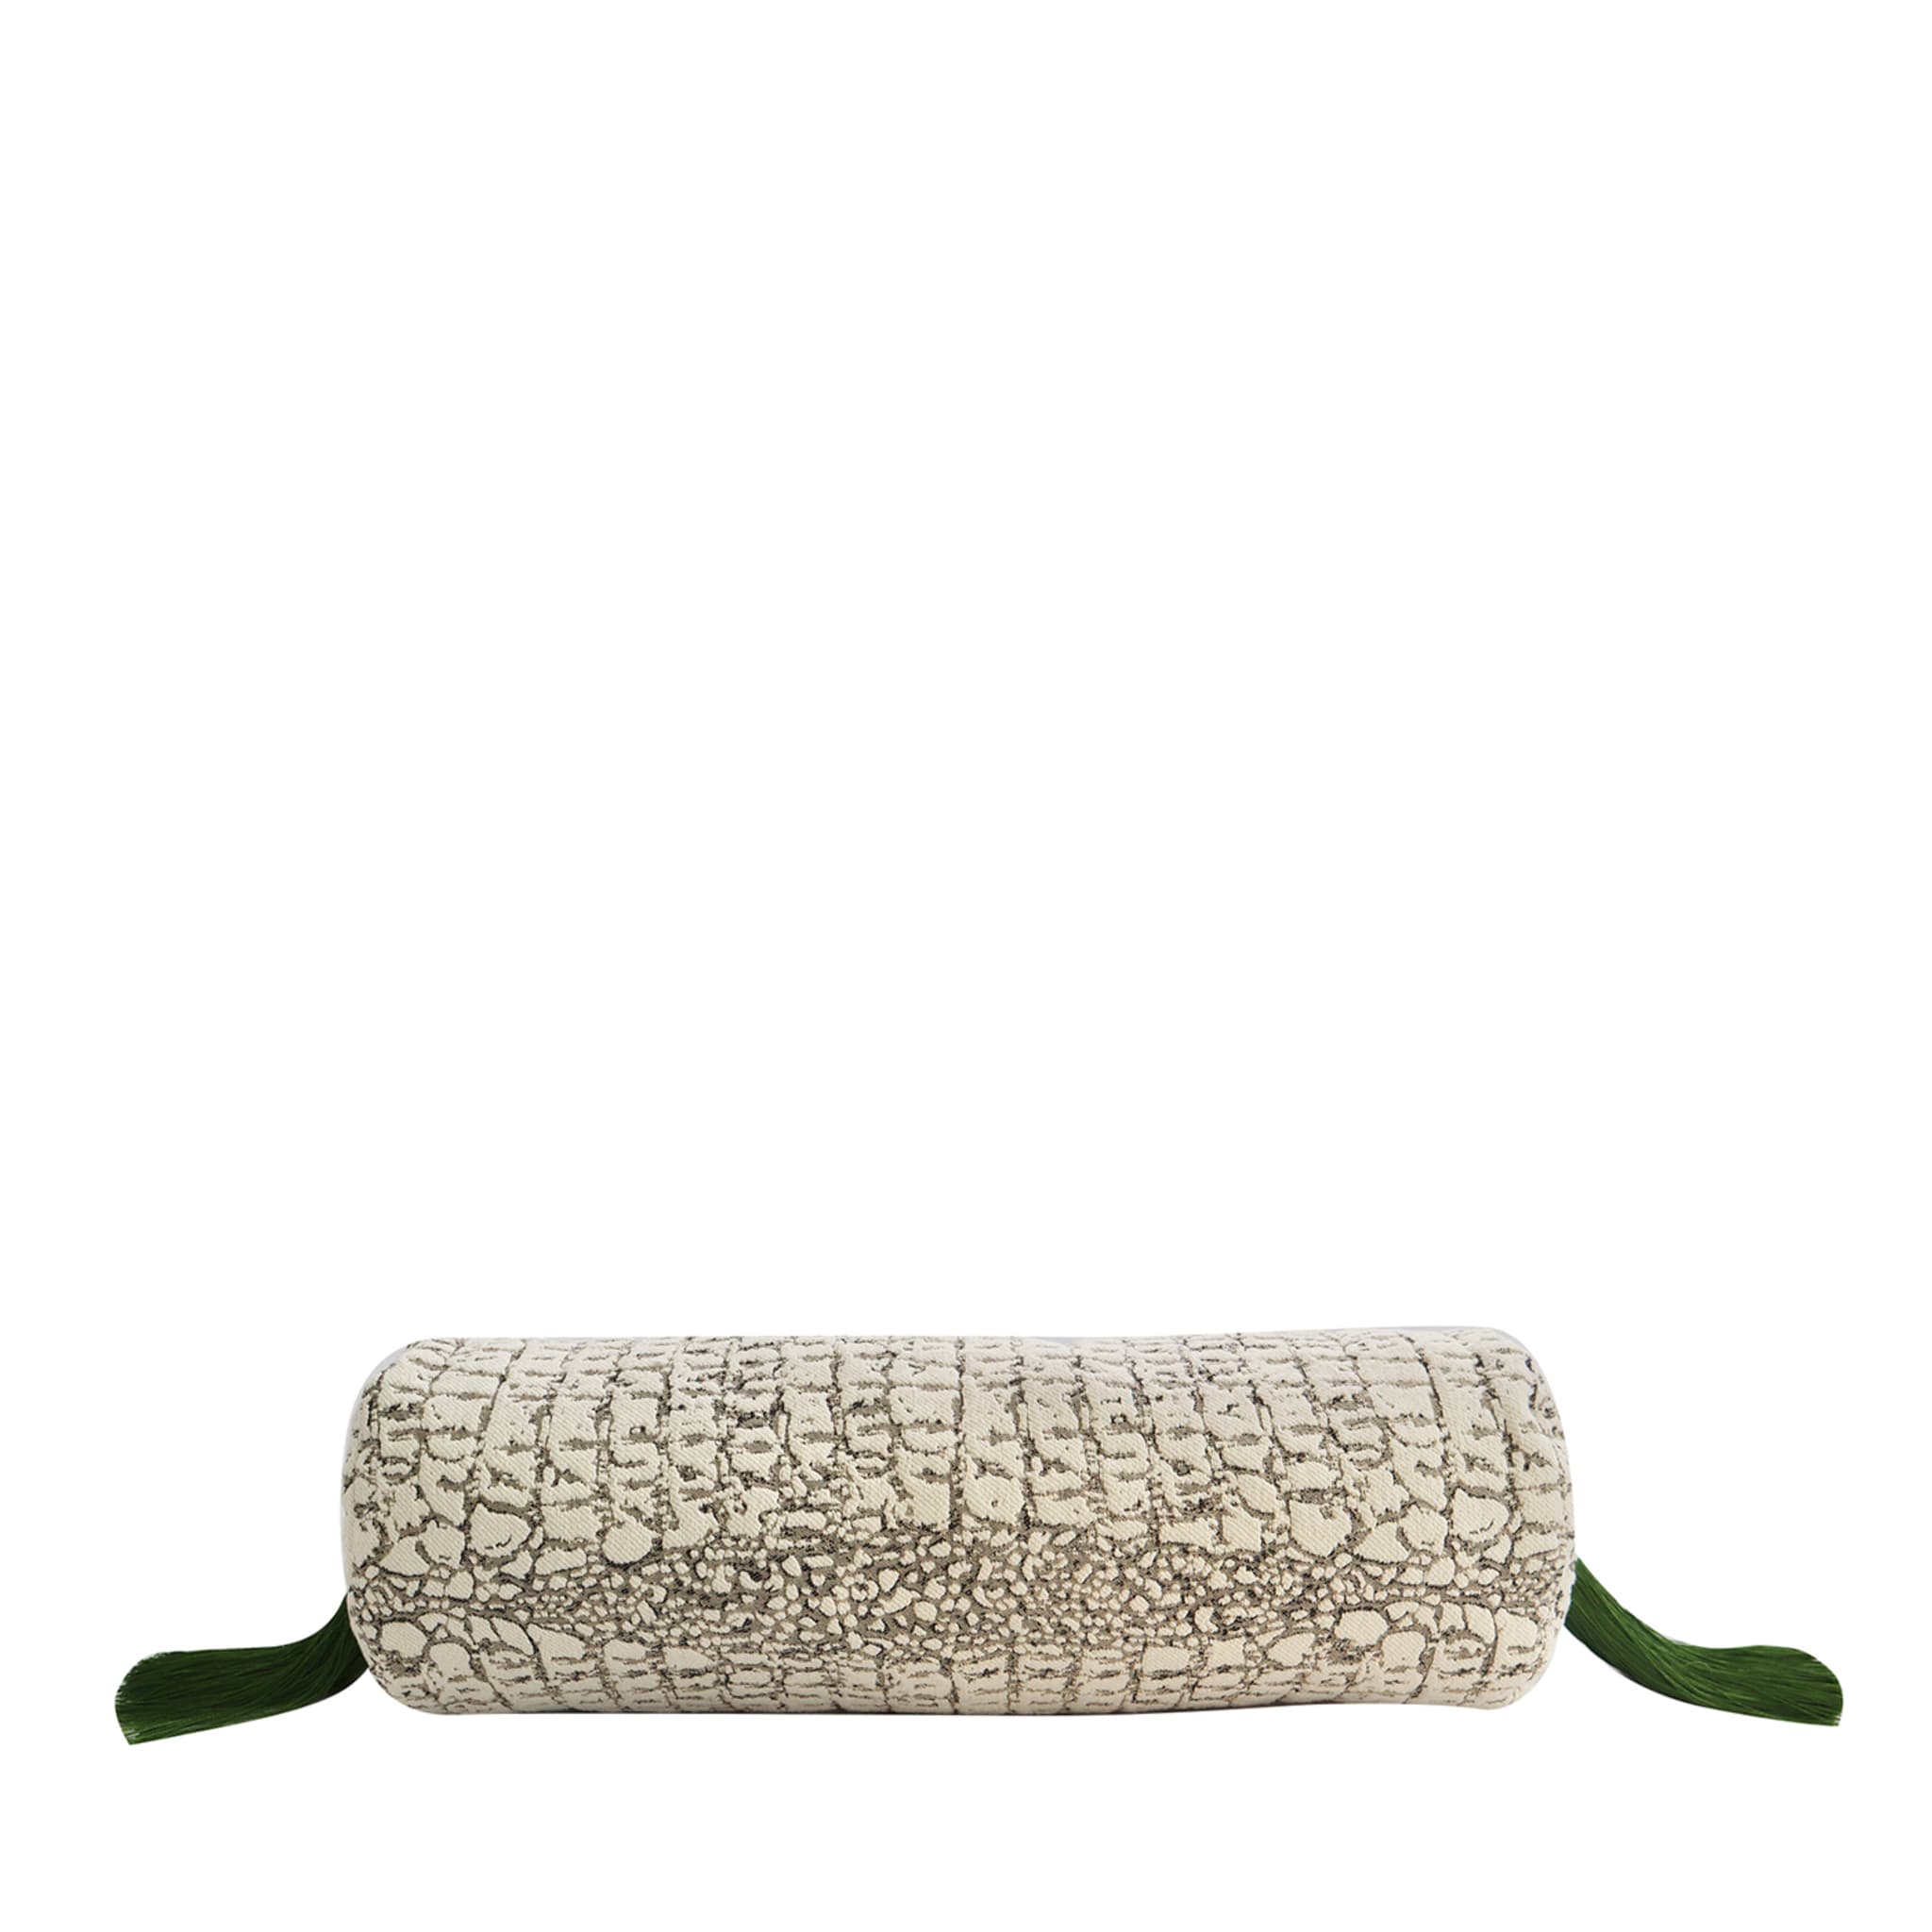 Croc Croc cushion - Main view